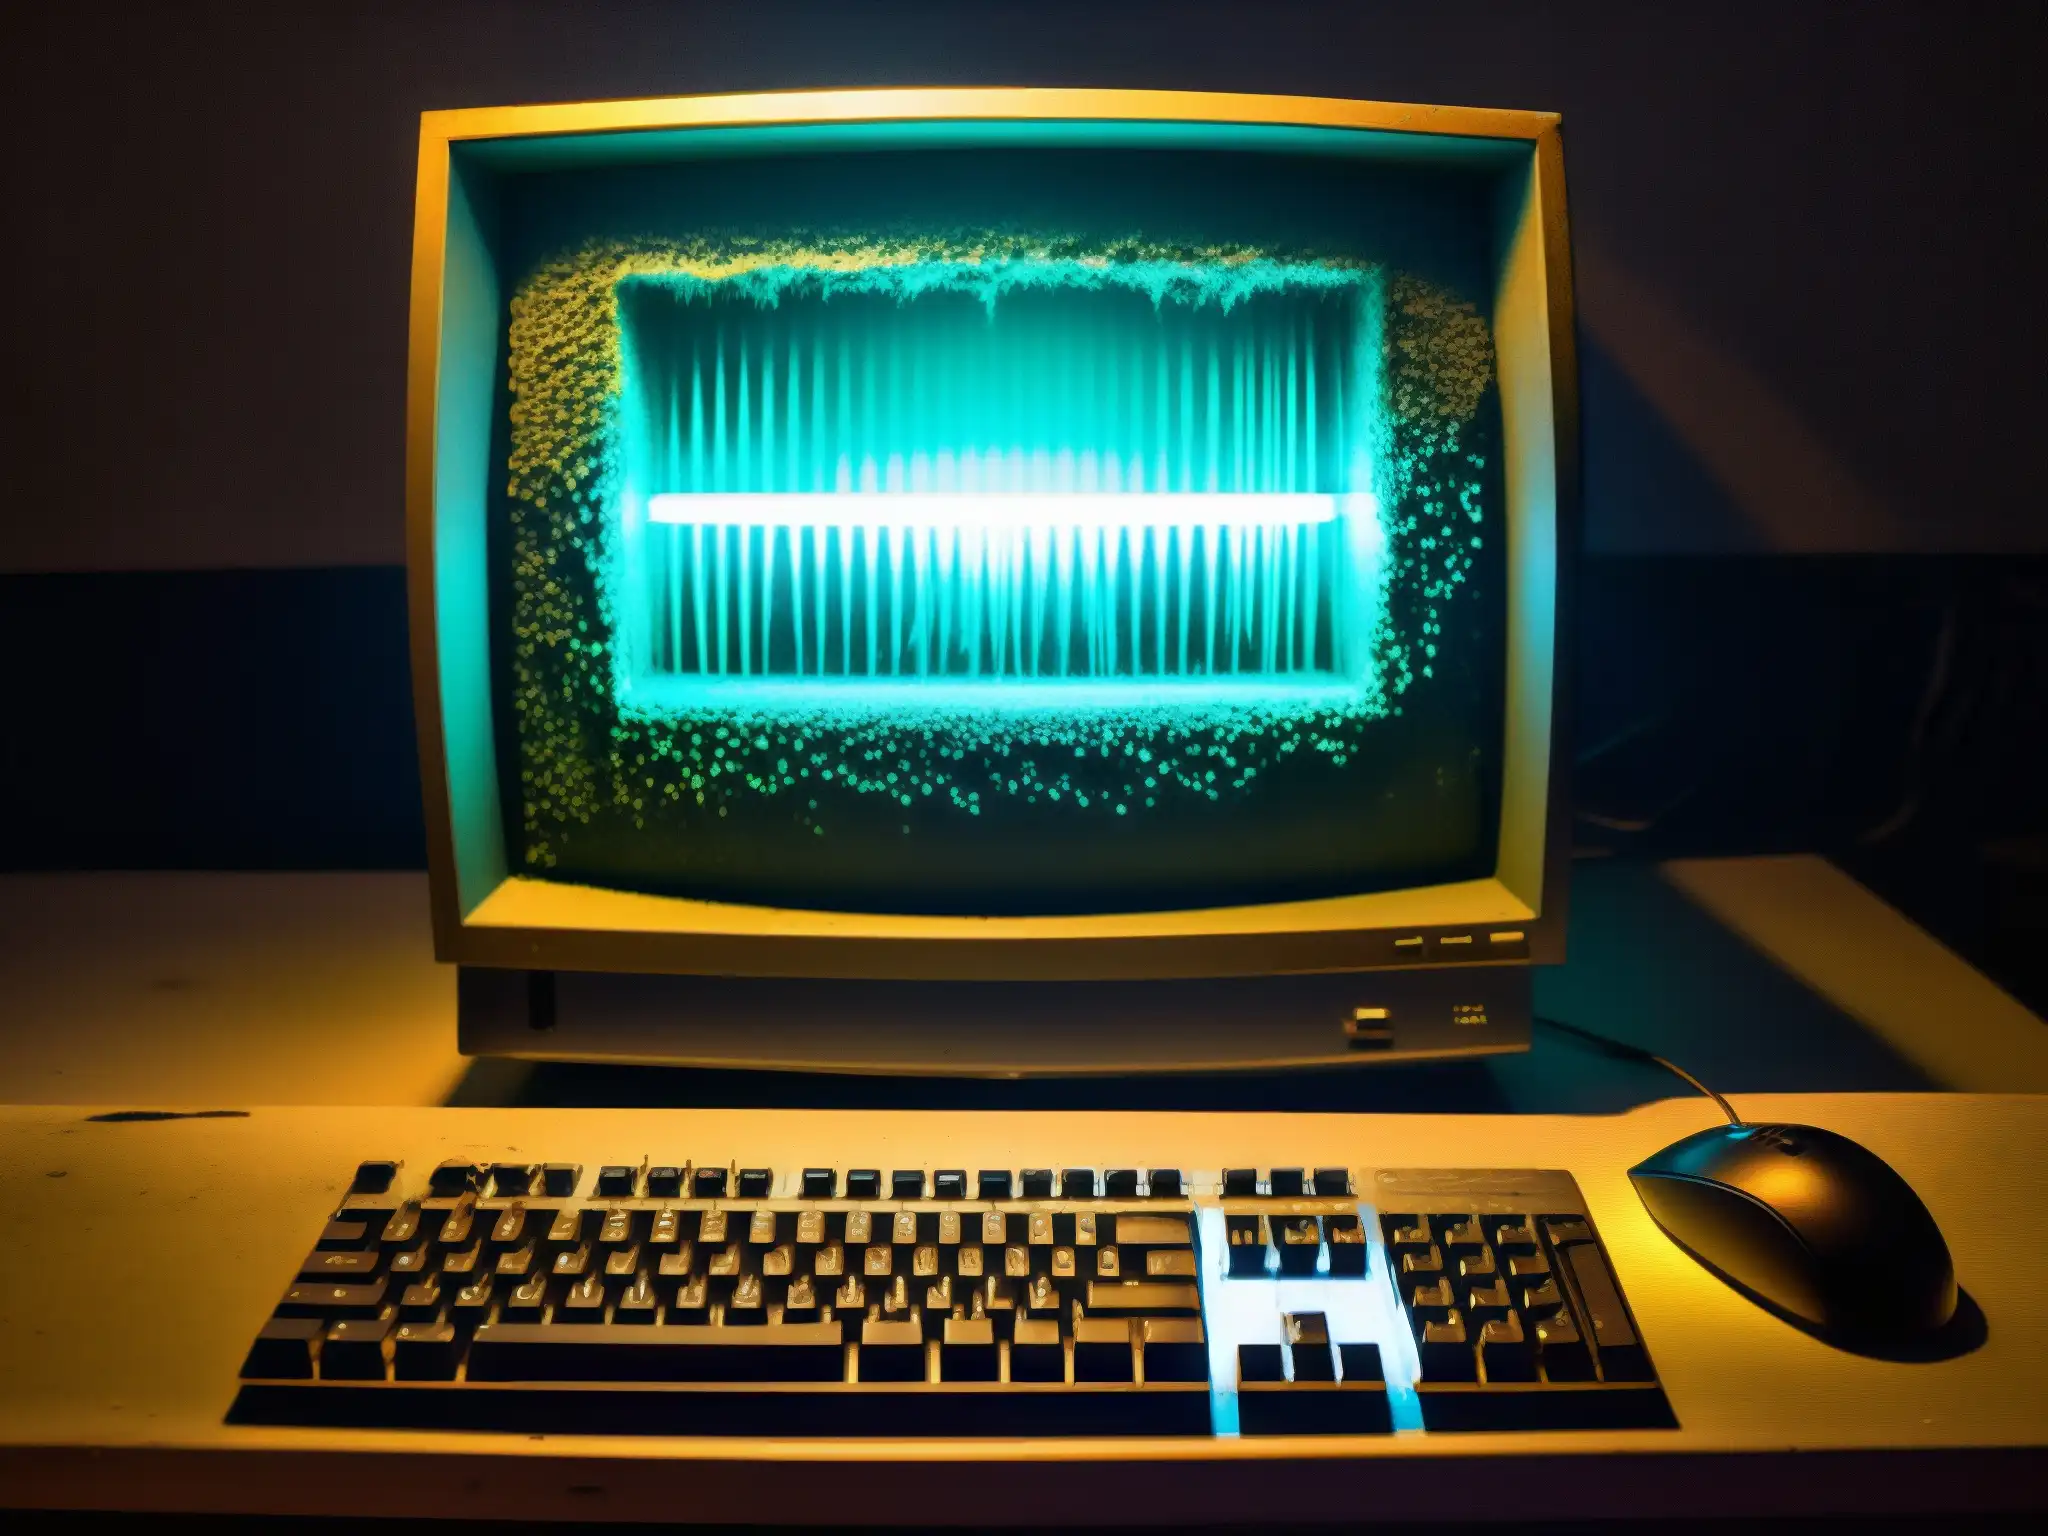 Imagen de un viejo ordenador abandonado en una habitación tenue con luces fluorescentes parpadeantes